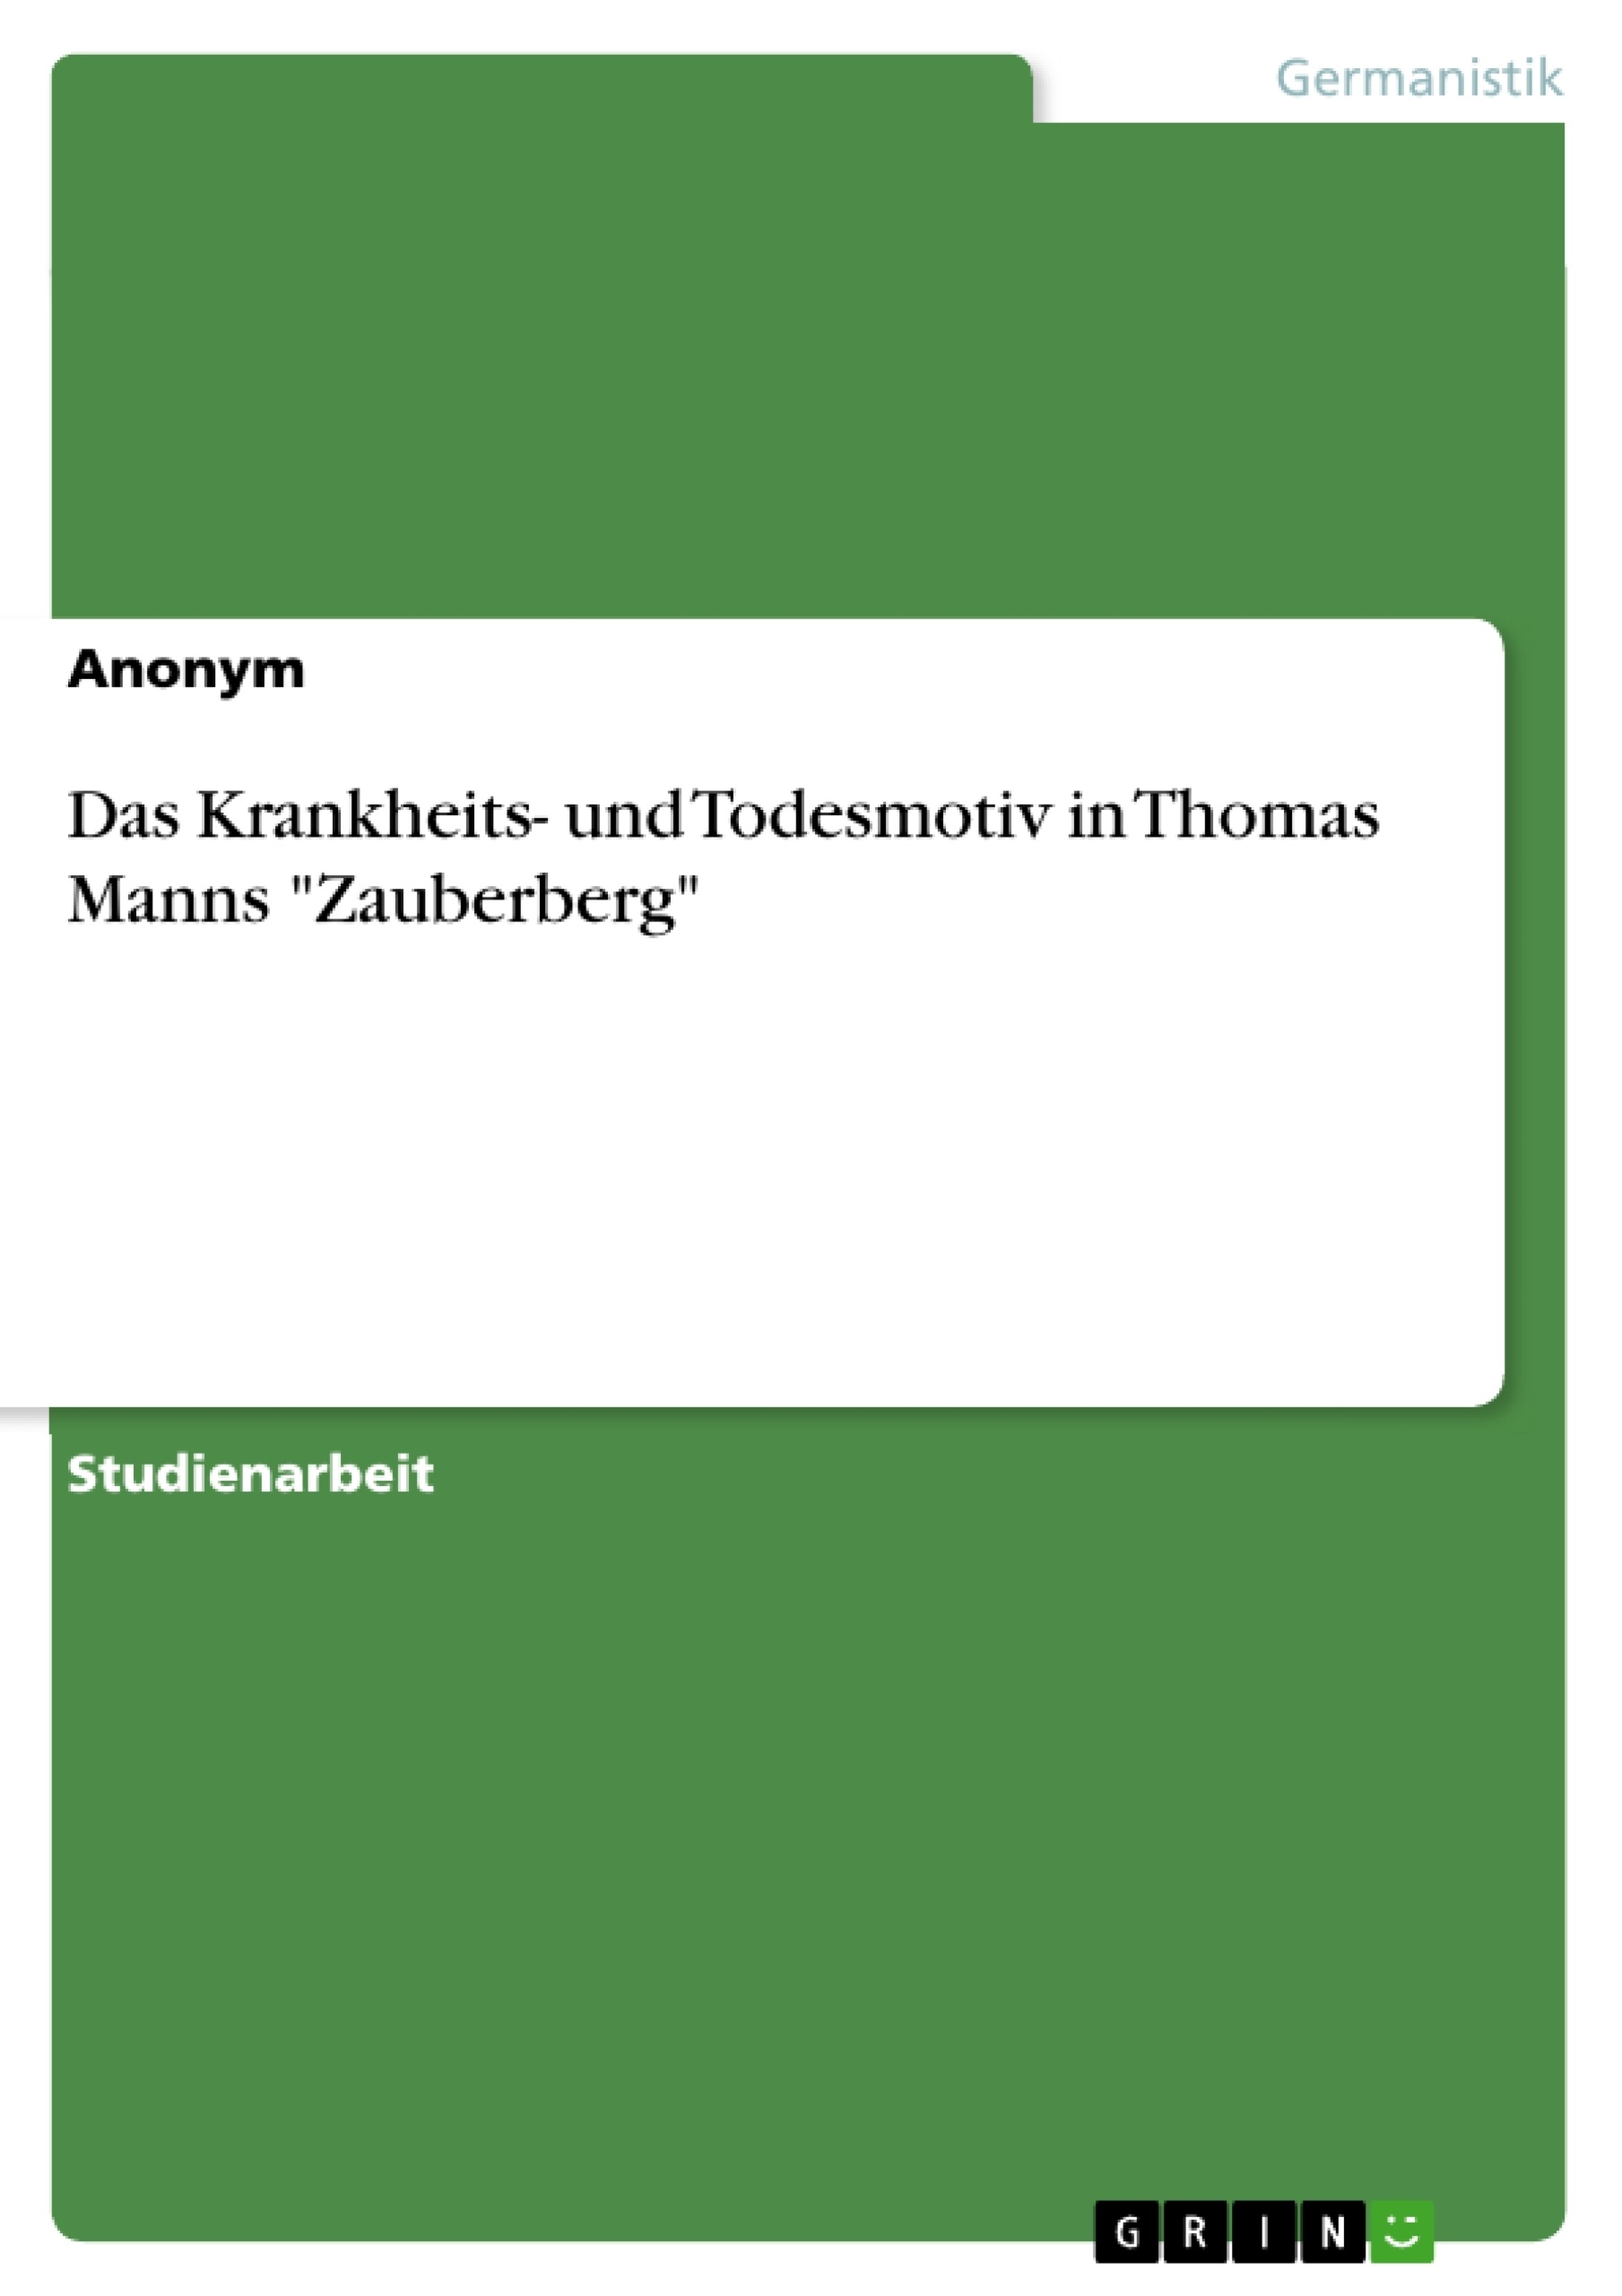 Titre: Das Krankheits- und Todesmotiv in Thomas Manns "Zauberberg"